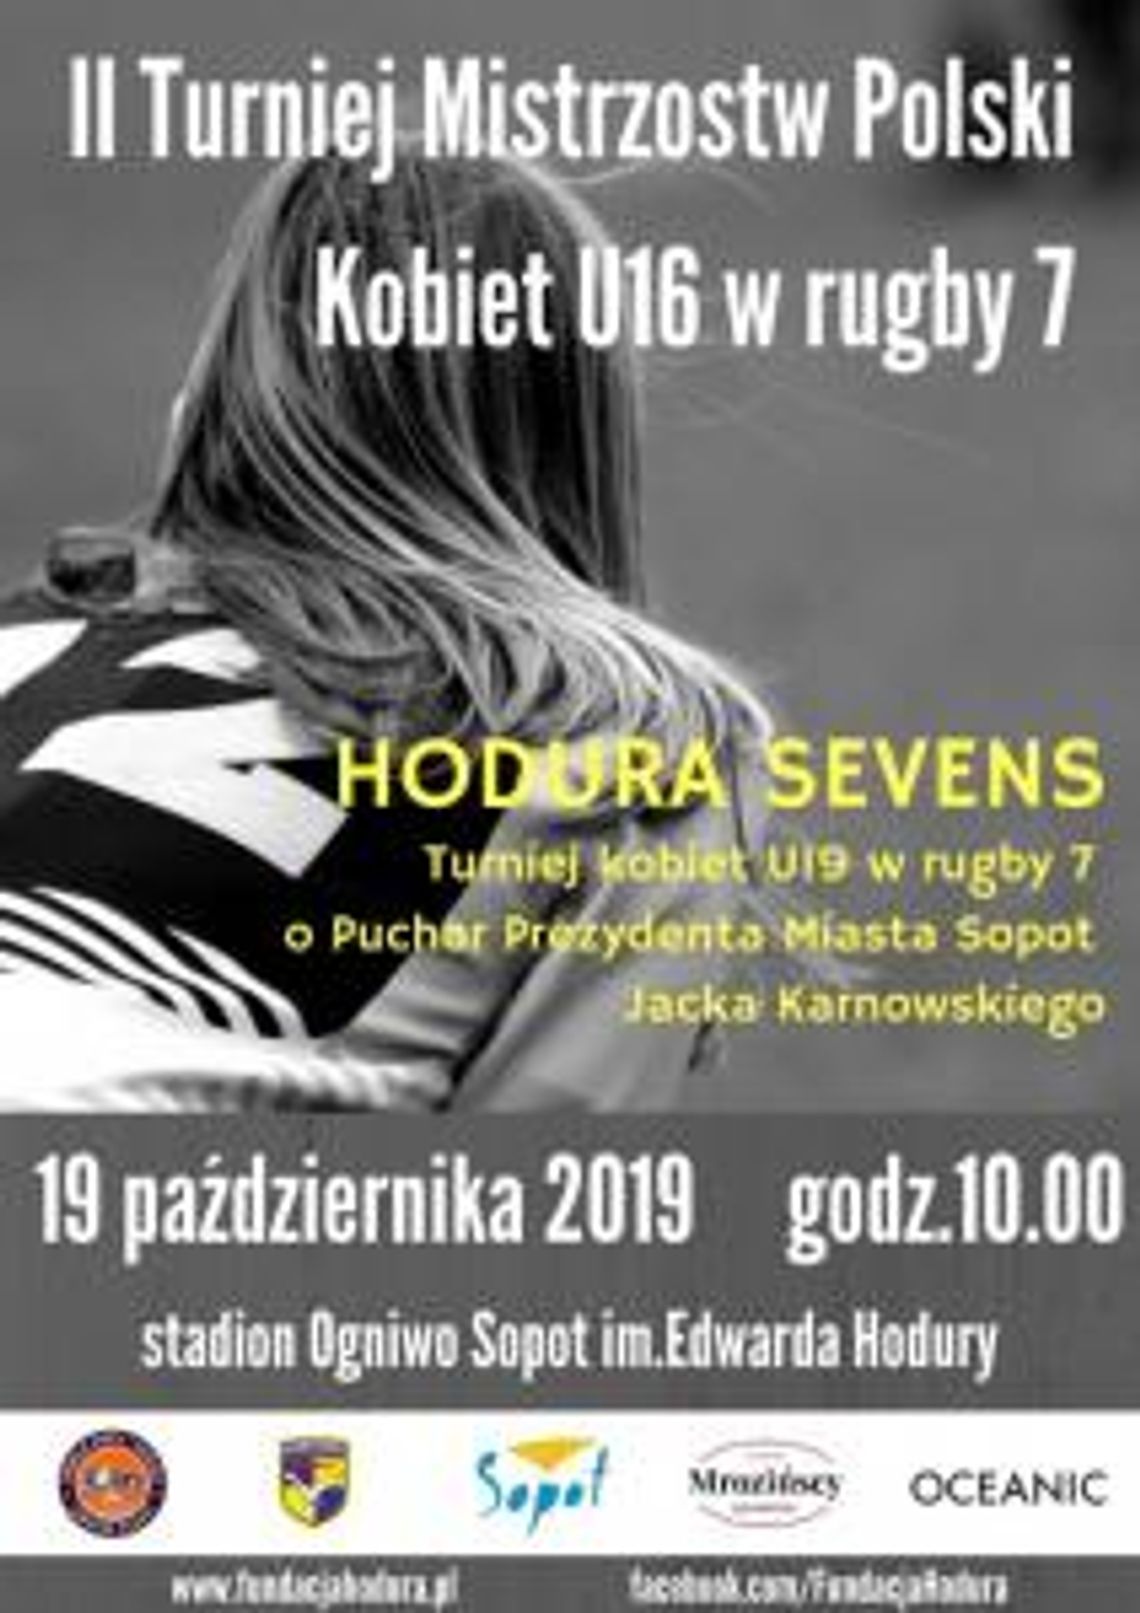 Turniej kobiet U16 i U19 w rugby 7